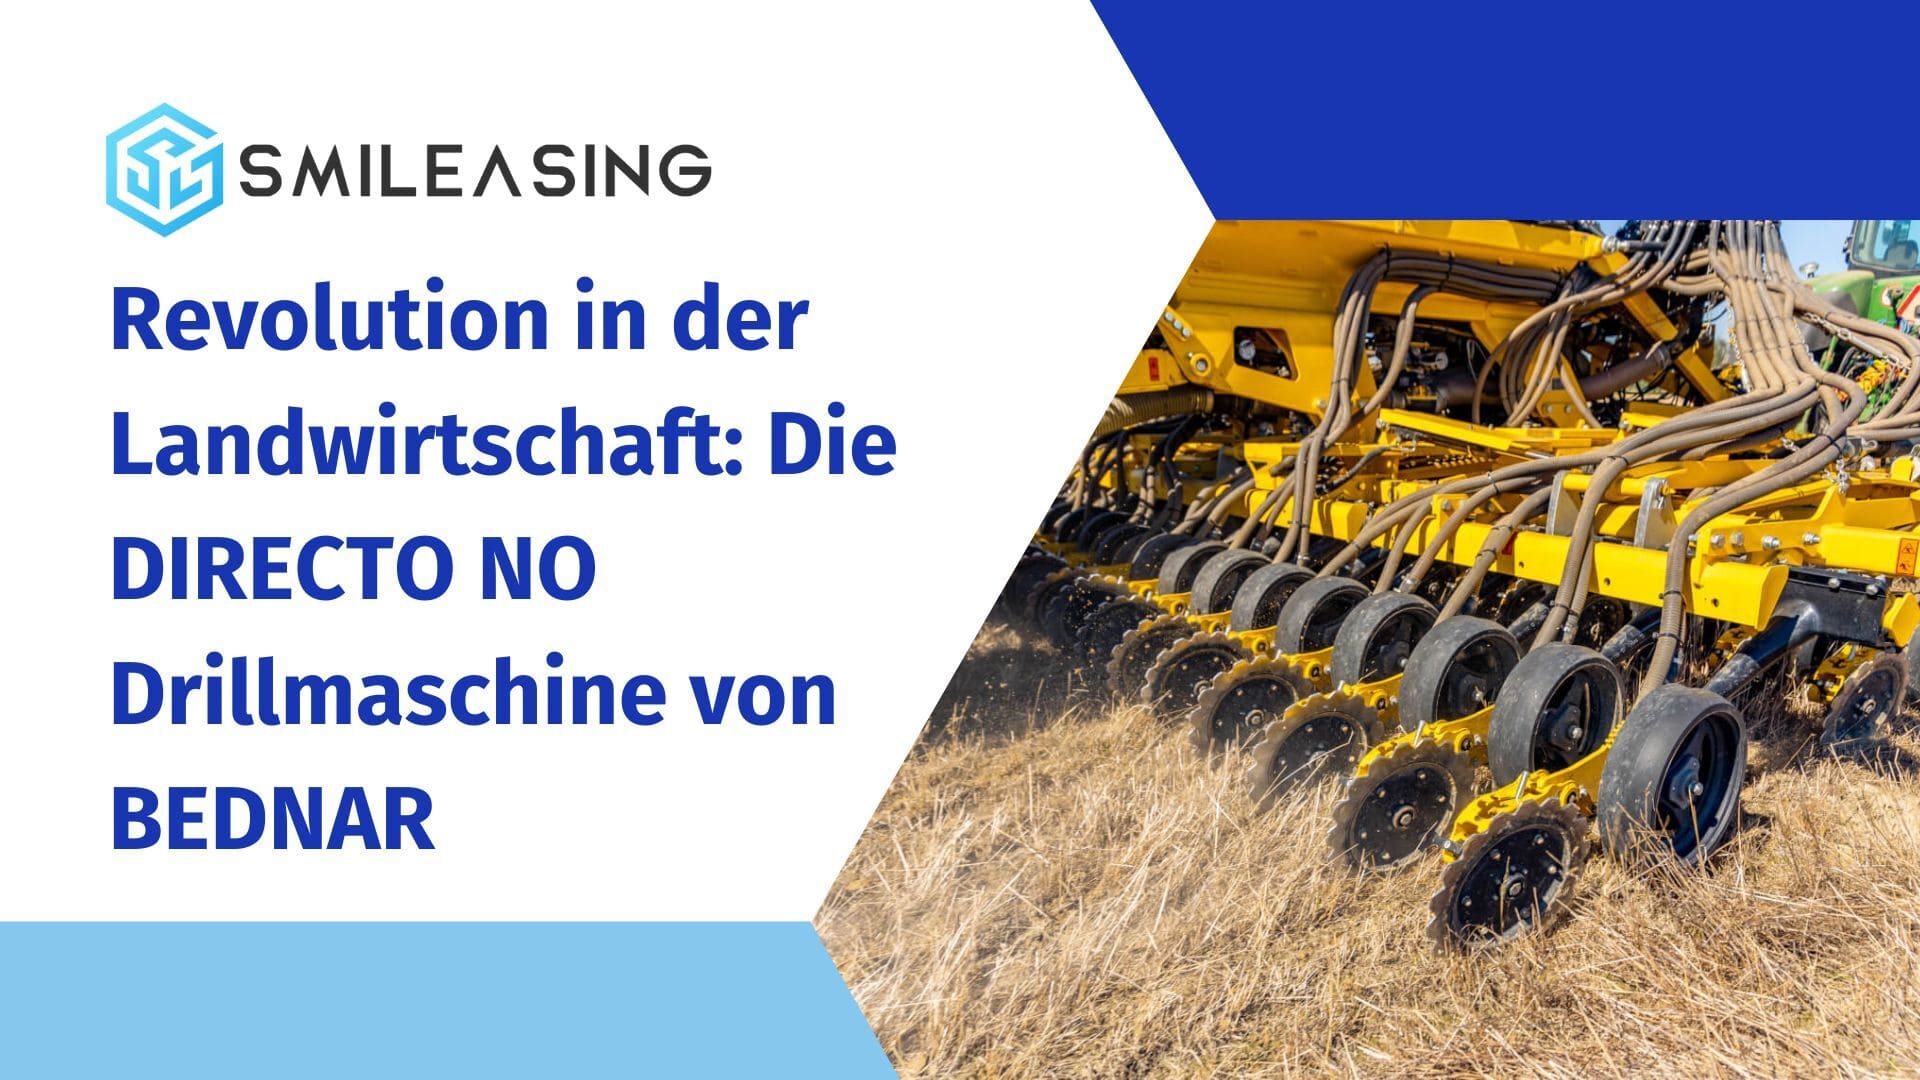 Revolution in der Landwirtschaft - Die DIRECTO NO Drillmaschine von BEDNAR